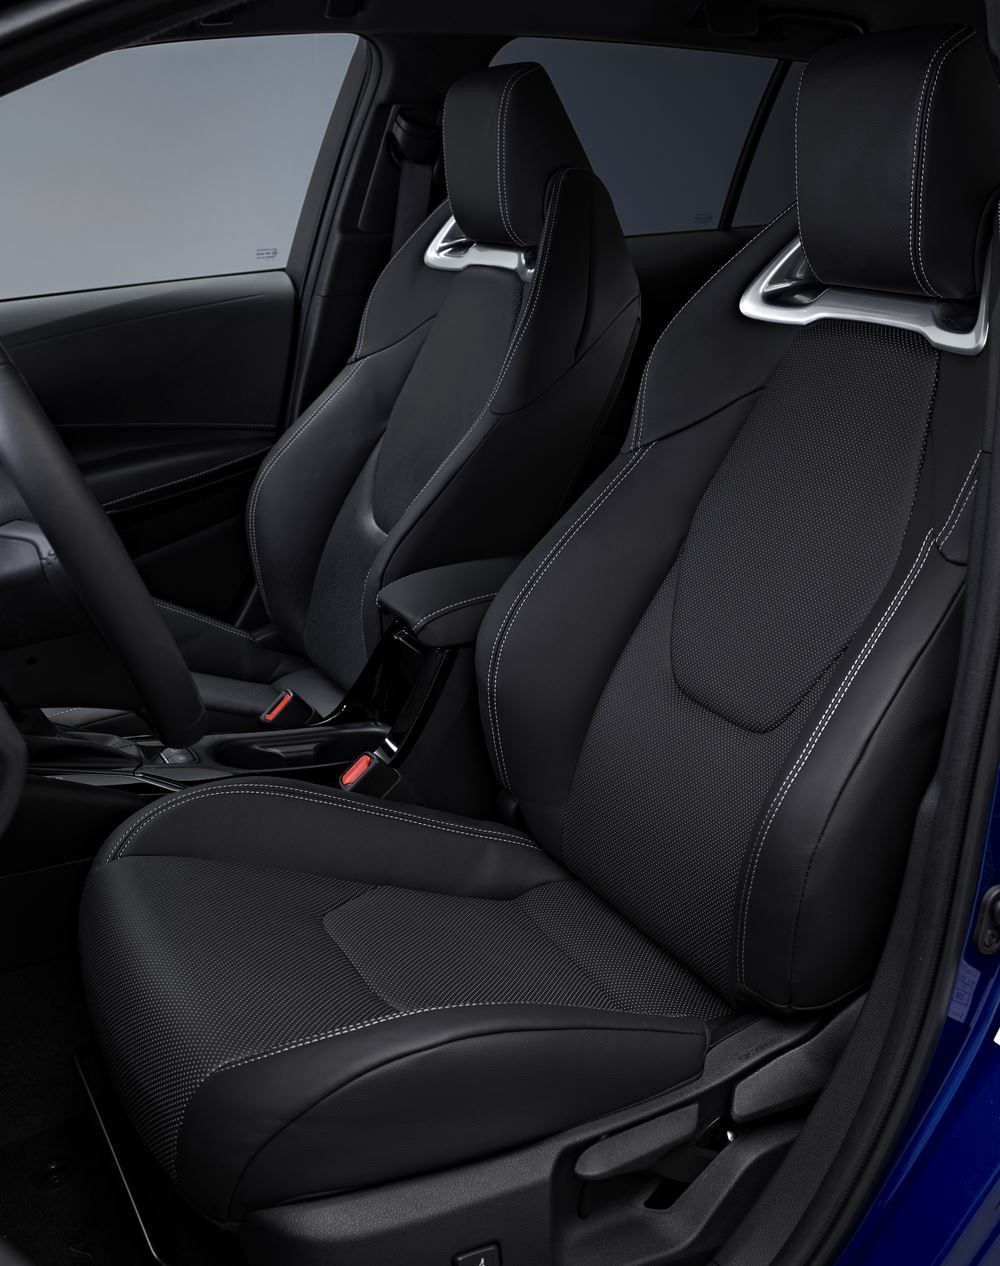 La Toyota Corolla Touring Sport reçoit de subtiles modernisations esthétiques